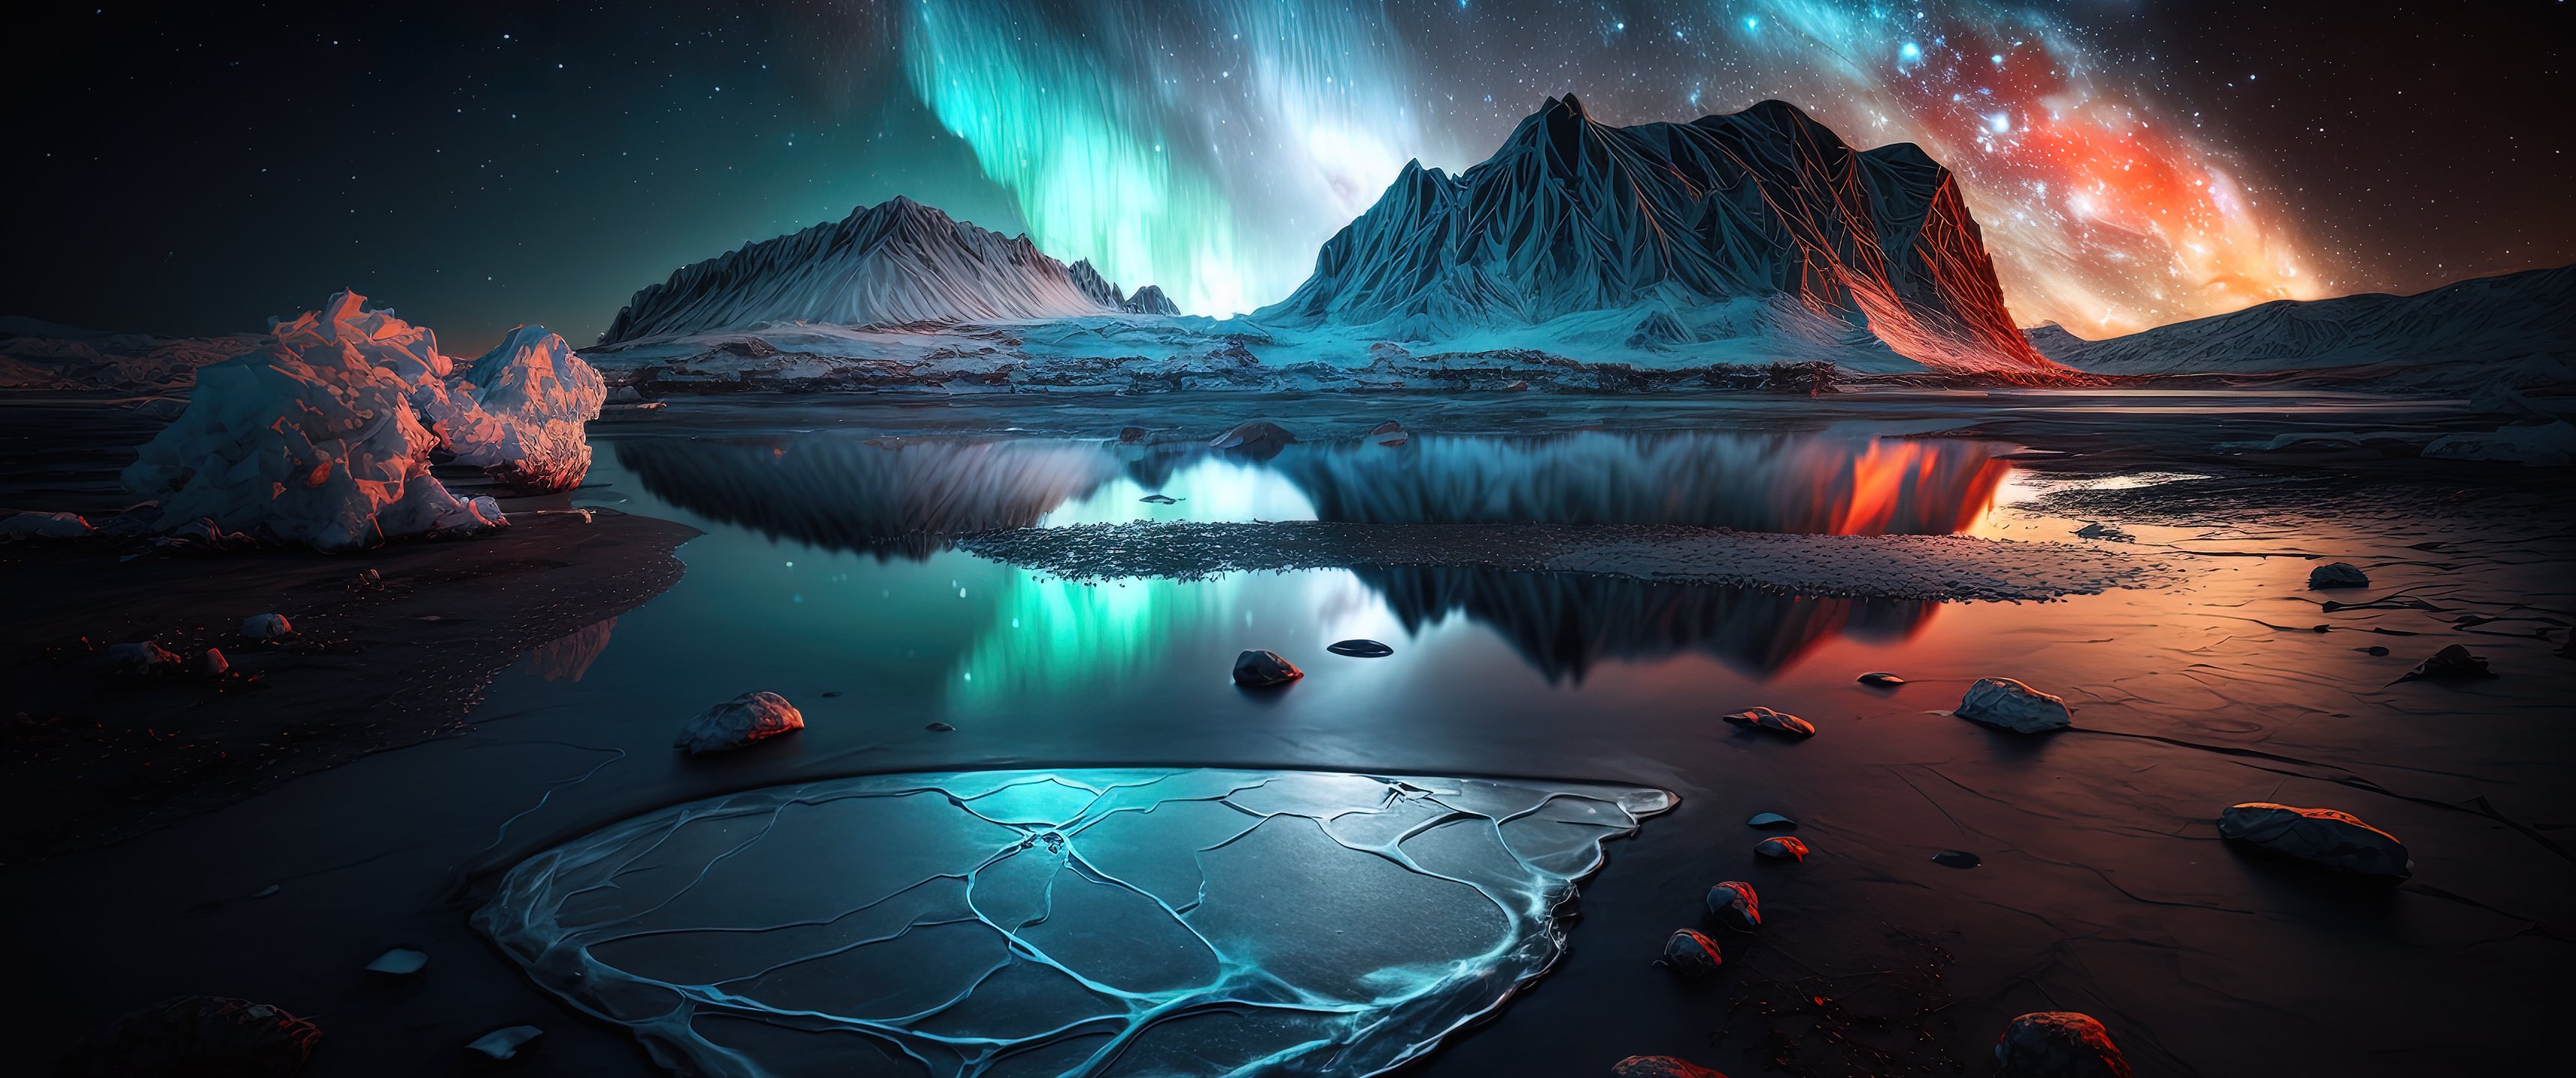 خوشگل ترین عکس پروفایل شفق قطبی تولید شده توسط Artificial Intelligence یا هوش مصنوعی